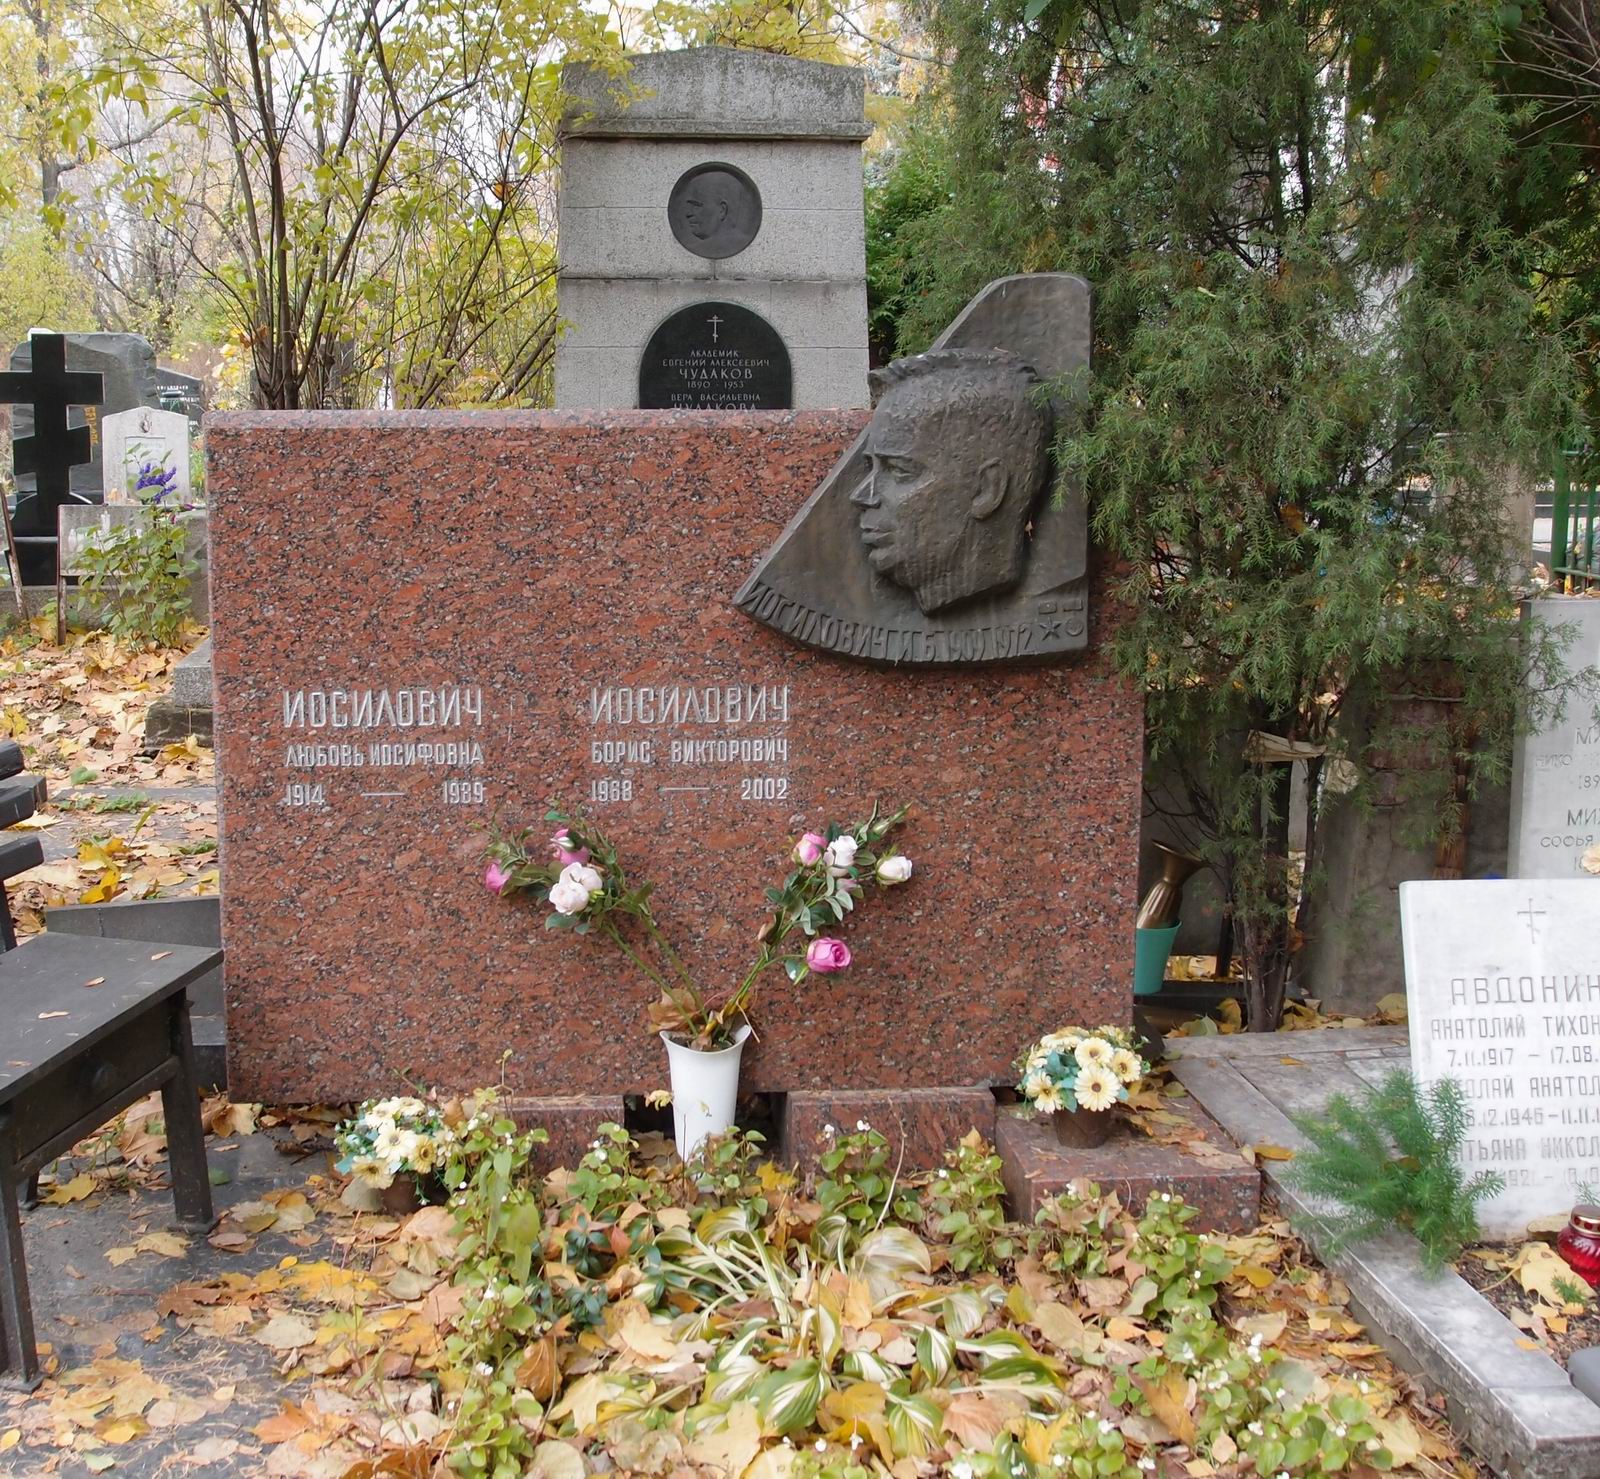 Памятник на могиле Иосиловича И.Б. (1909-1972), арх. Ю.Данченко, на Новодевичьем кладбище (1-4-10).